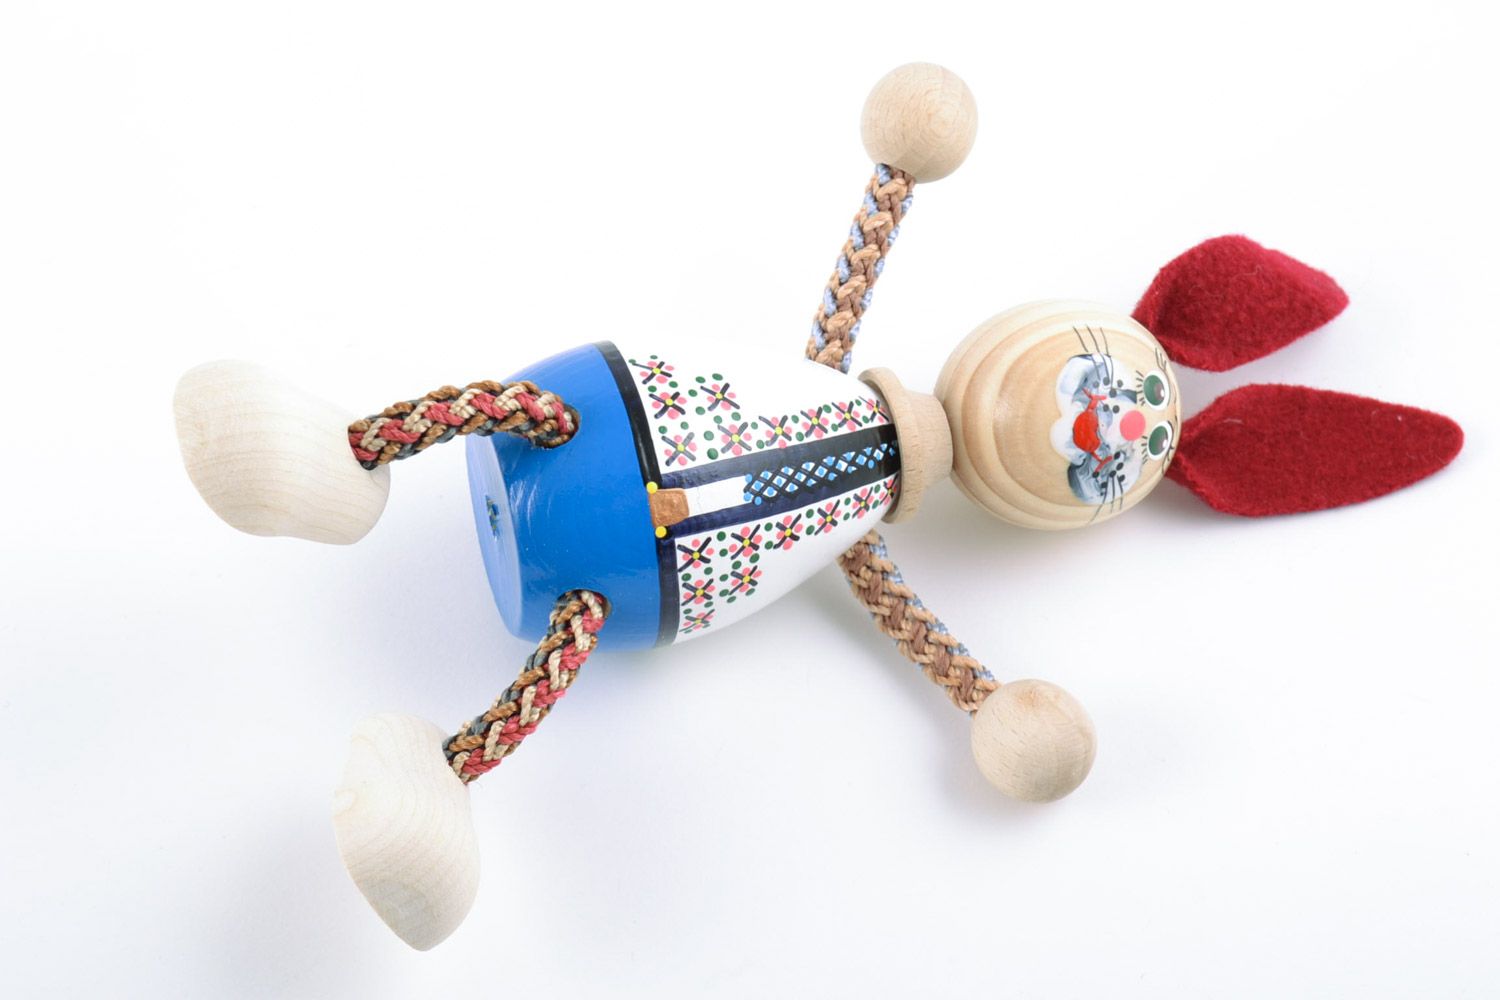 Handmade bemaltes Holz Spielzeug Hase mit langen Ohren Geschenk für Kind  foto 5